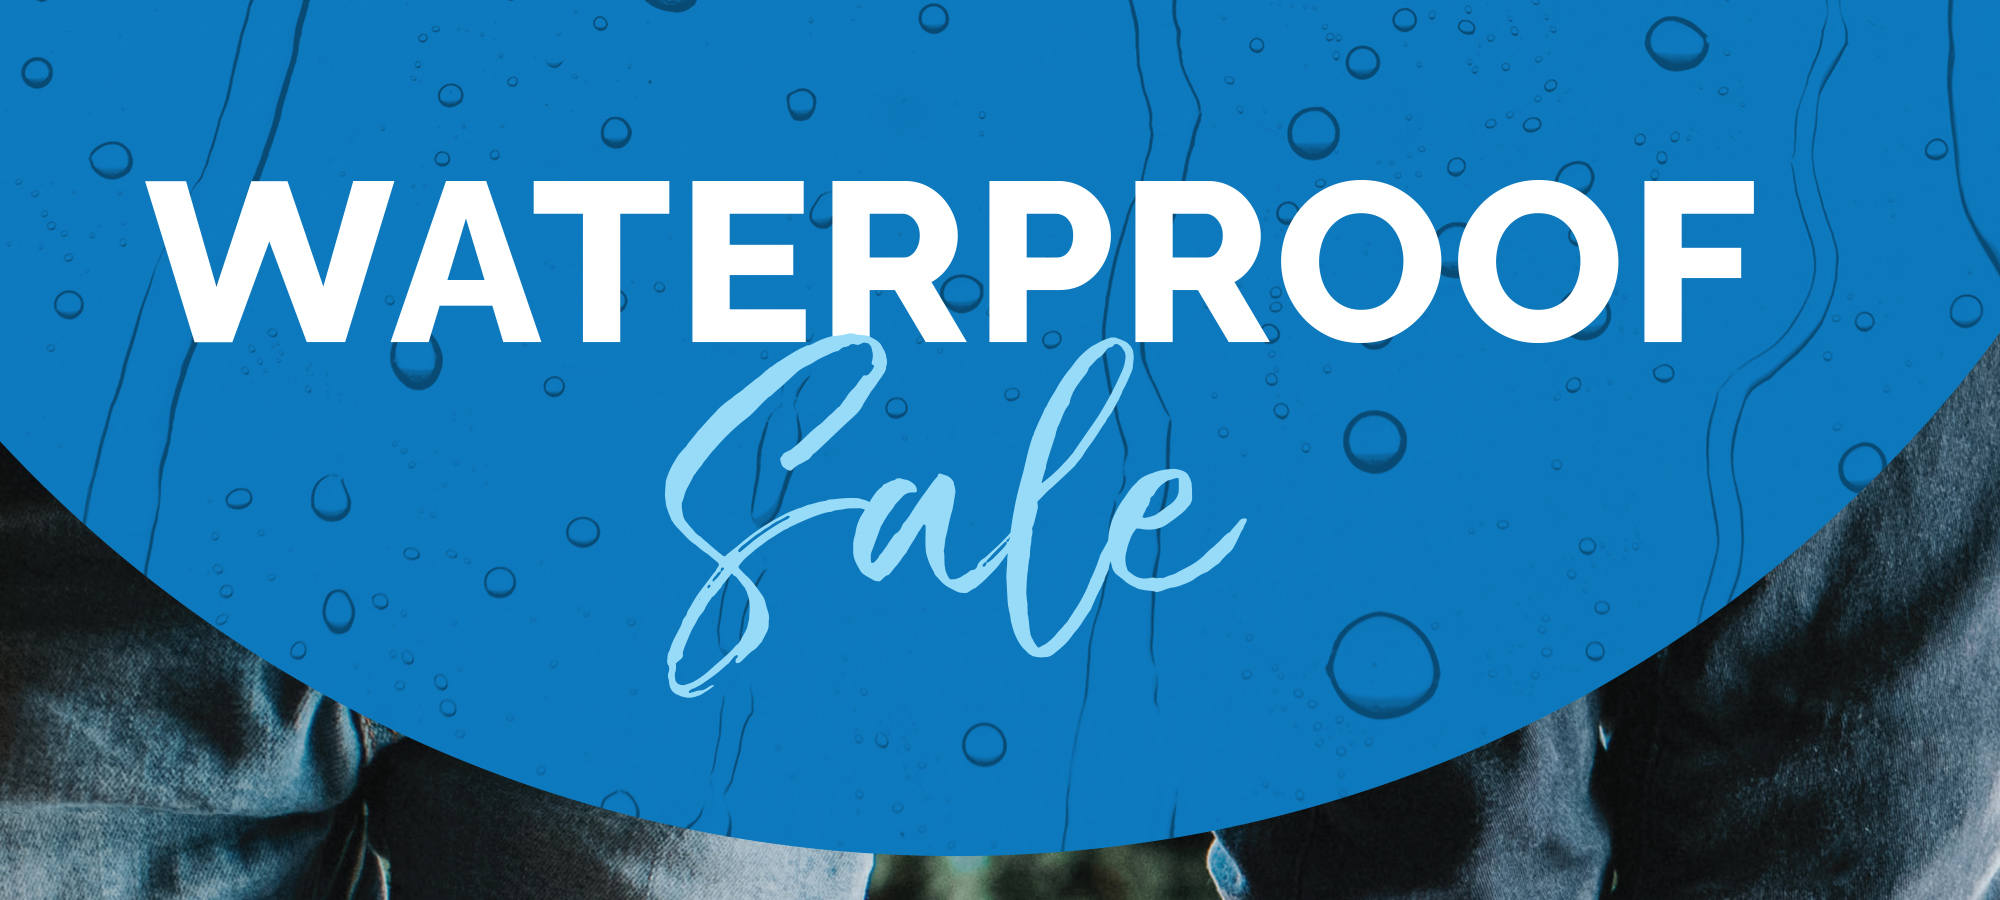 Waterproof flooring sale, 18-month interest free financing and 10% off select waterproof hardwood flooring